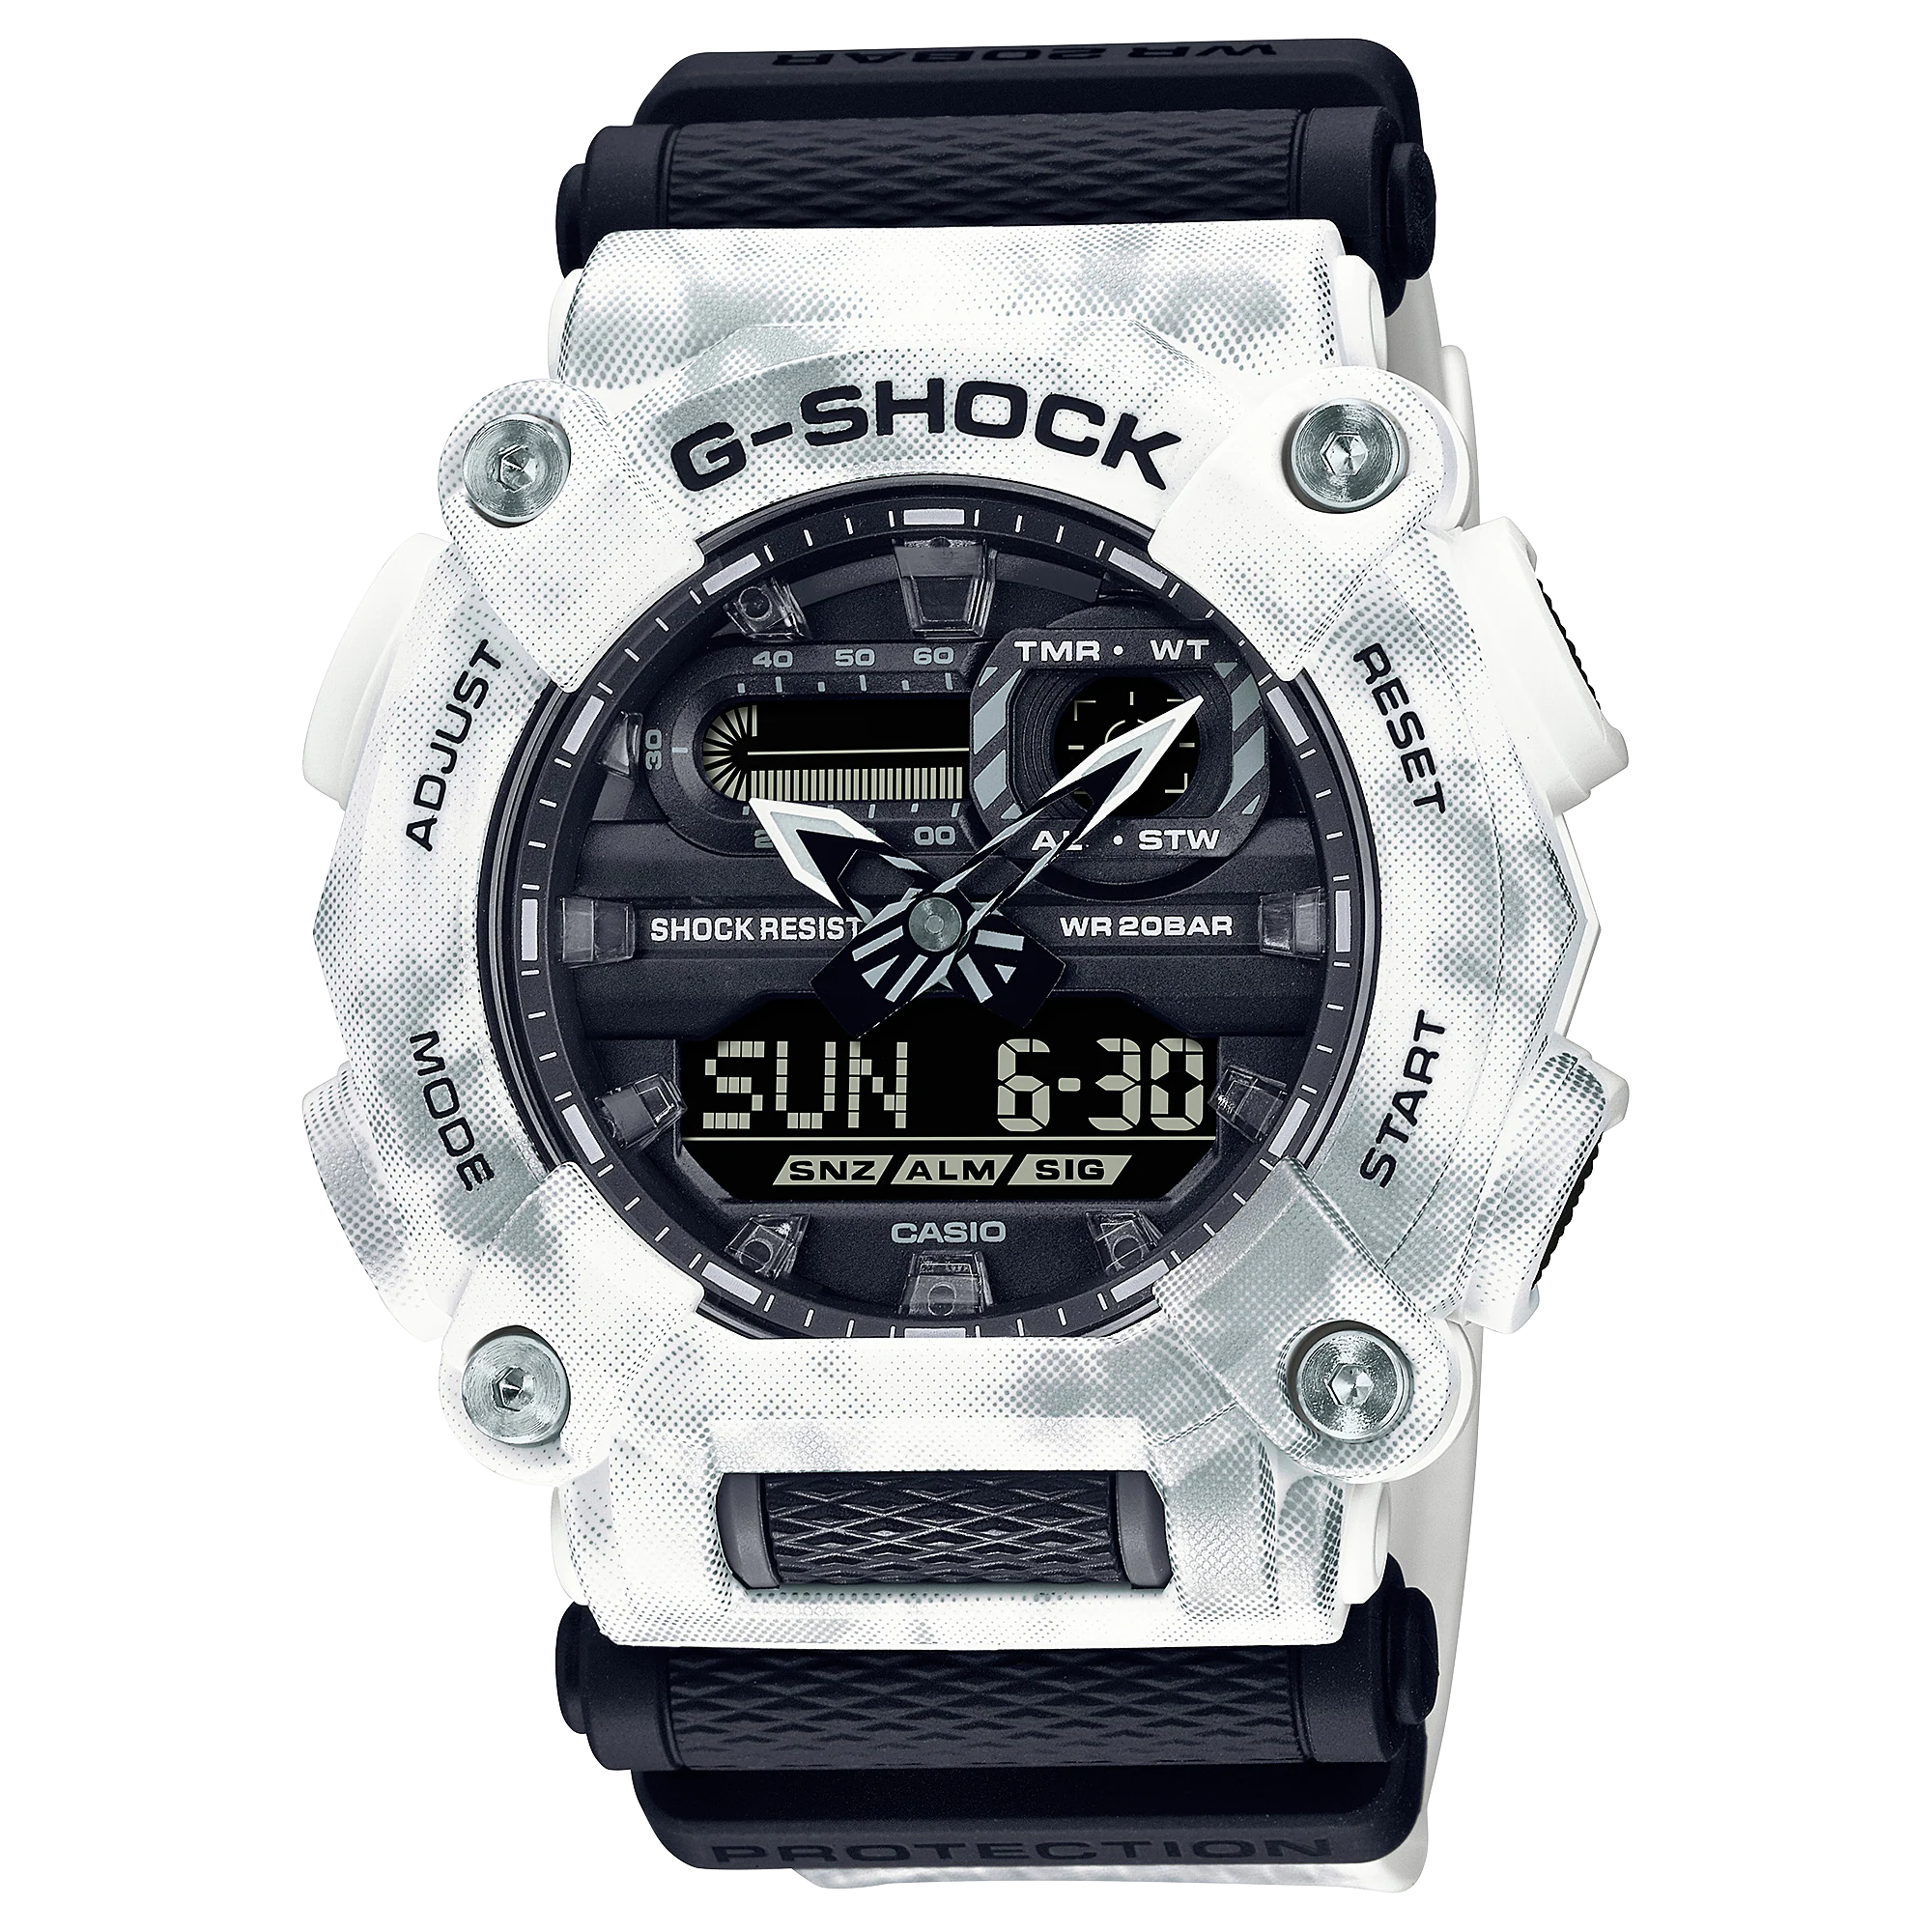 CASIO G-SHOCK GA-900GC-7AJF GA-900GC-7A World time 20 bar watch - IPPO JAPAN WATCH 